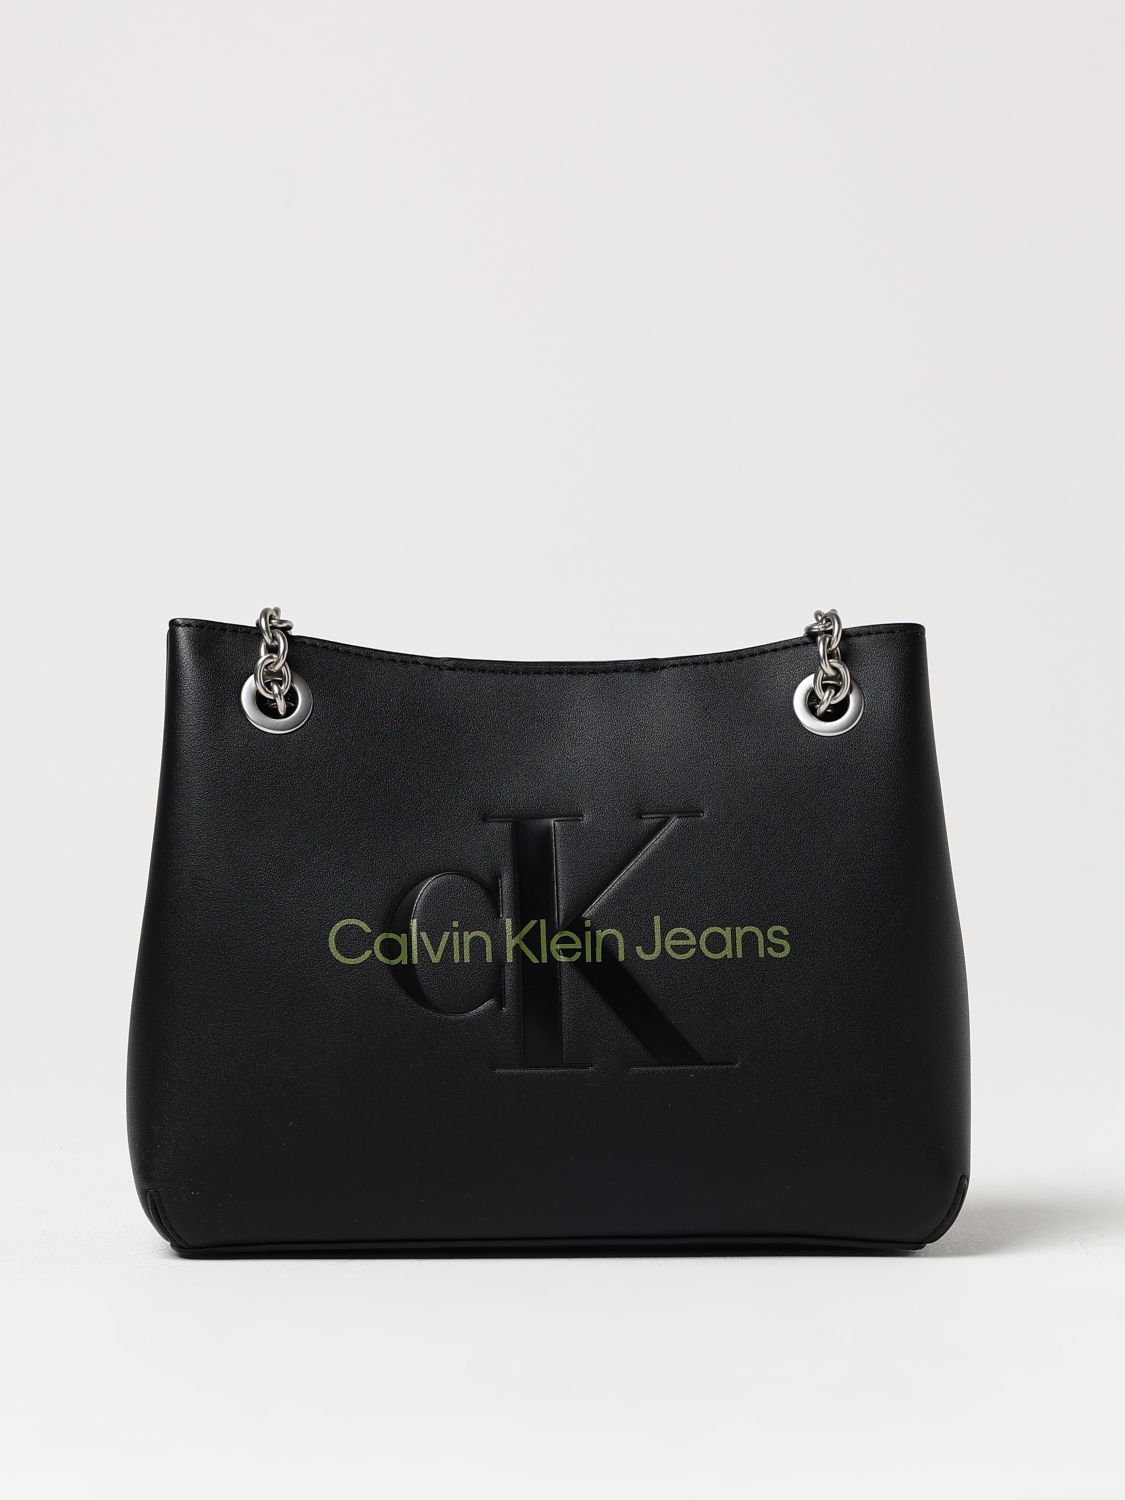 Ck Jeans Shoulder Bag CK JEANS Woman colour Black